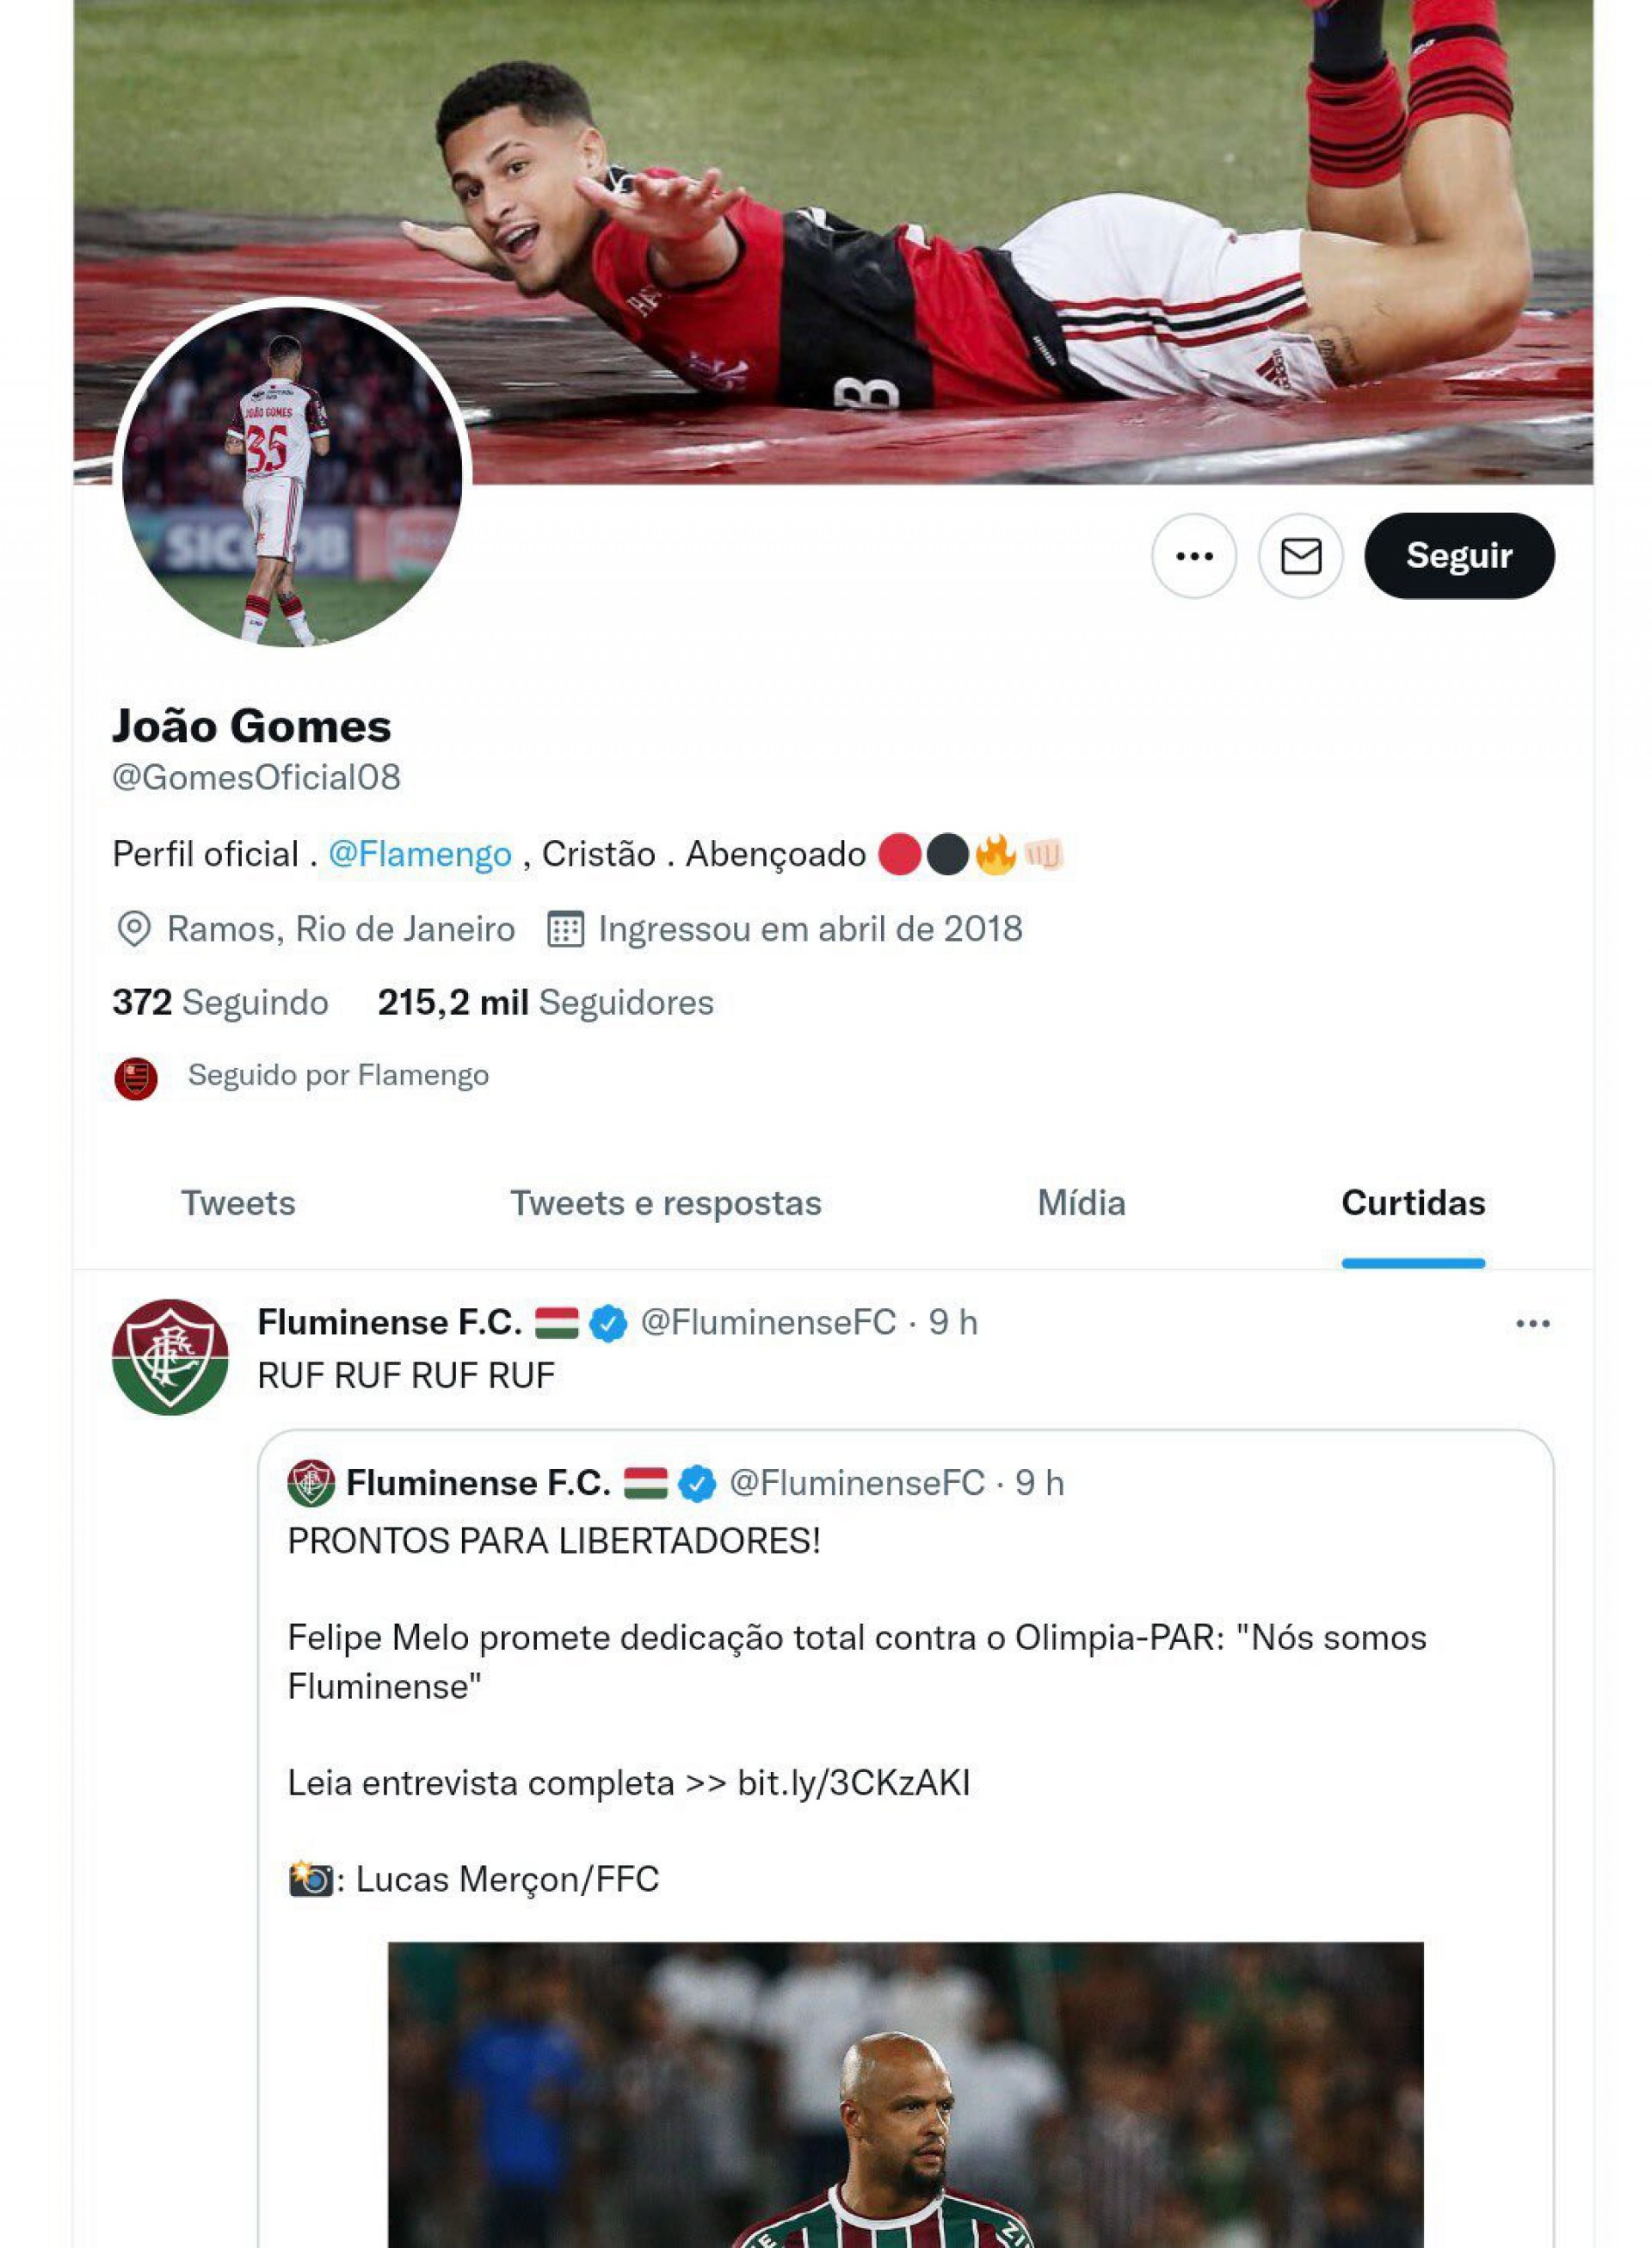 João Gomes, do Flamengo, curtiu uma publicação do Fluminense após a eliminação na Libertadores - Foto: Reprodução/Twitter